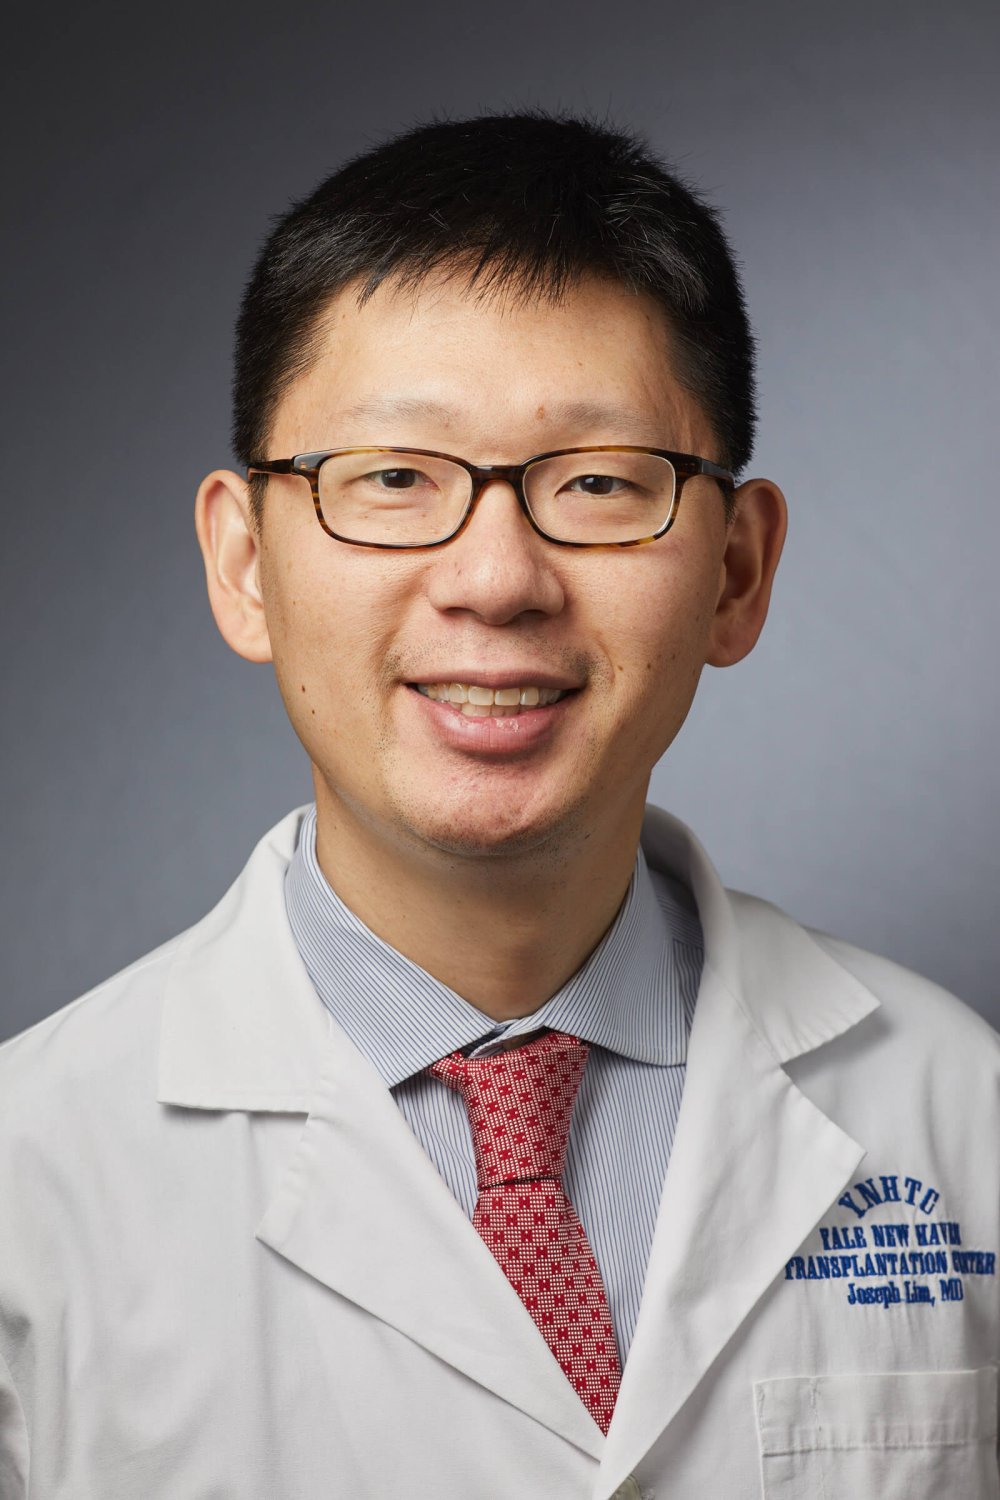 Joseph Lim, M.D.